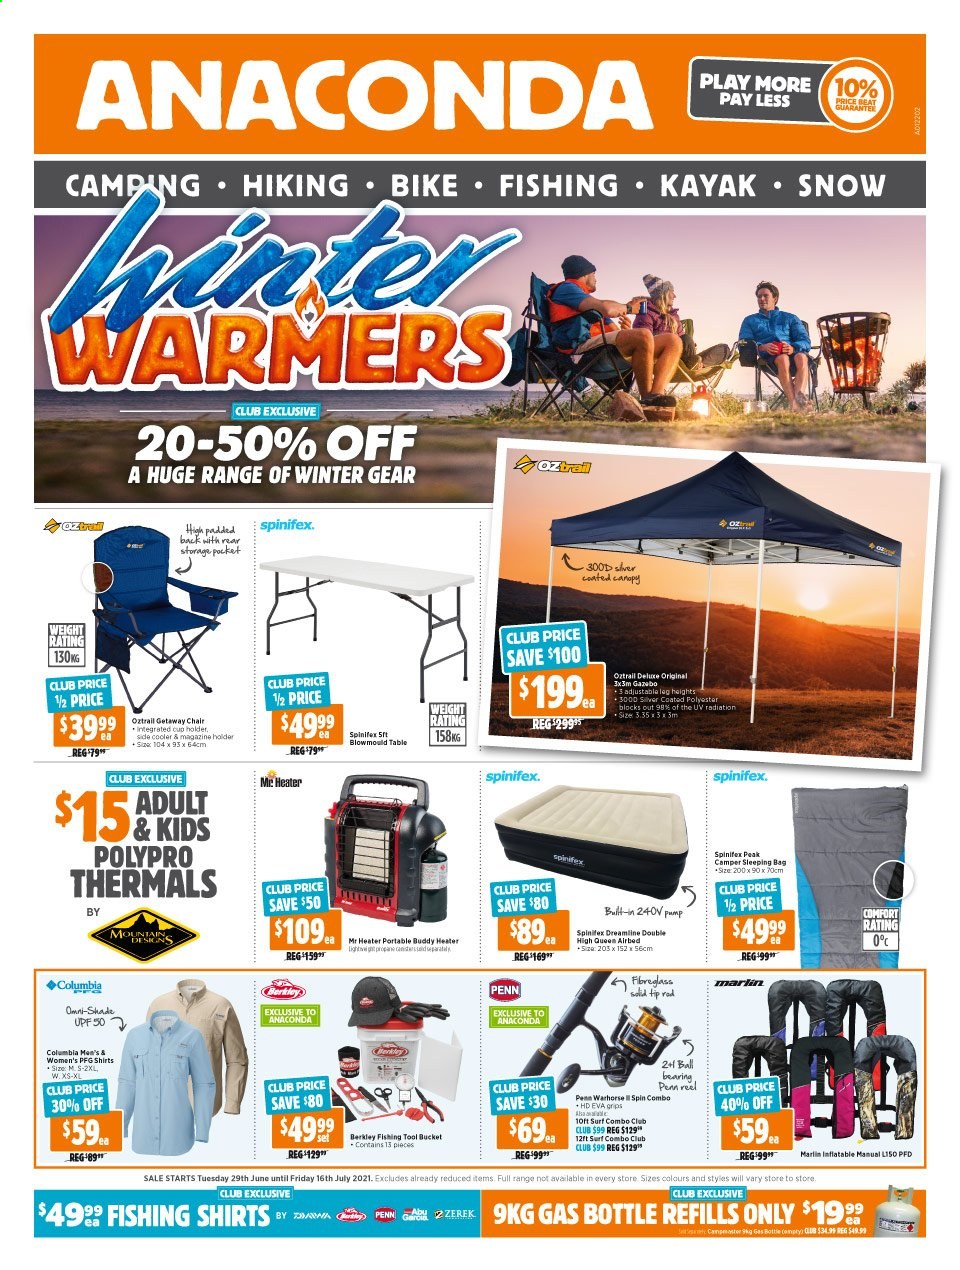 thumbnail - Anaconda Catalogue - 29 Jun 2021 - 16 Jul 2021 - Sales products - Columbia, shirt, kayak, marlin, sleeping bag, holder, reel, fishing rod, gas bottle, Penn, pump. Page 1.